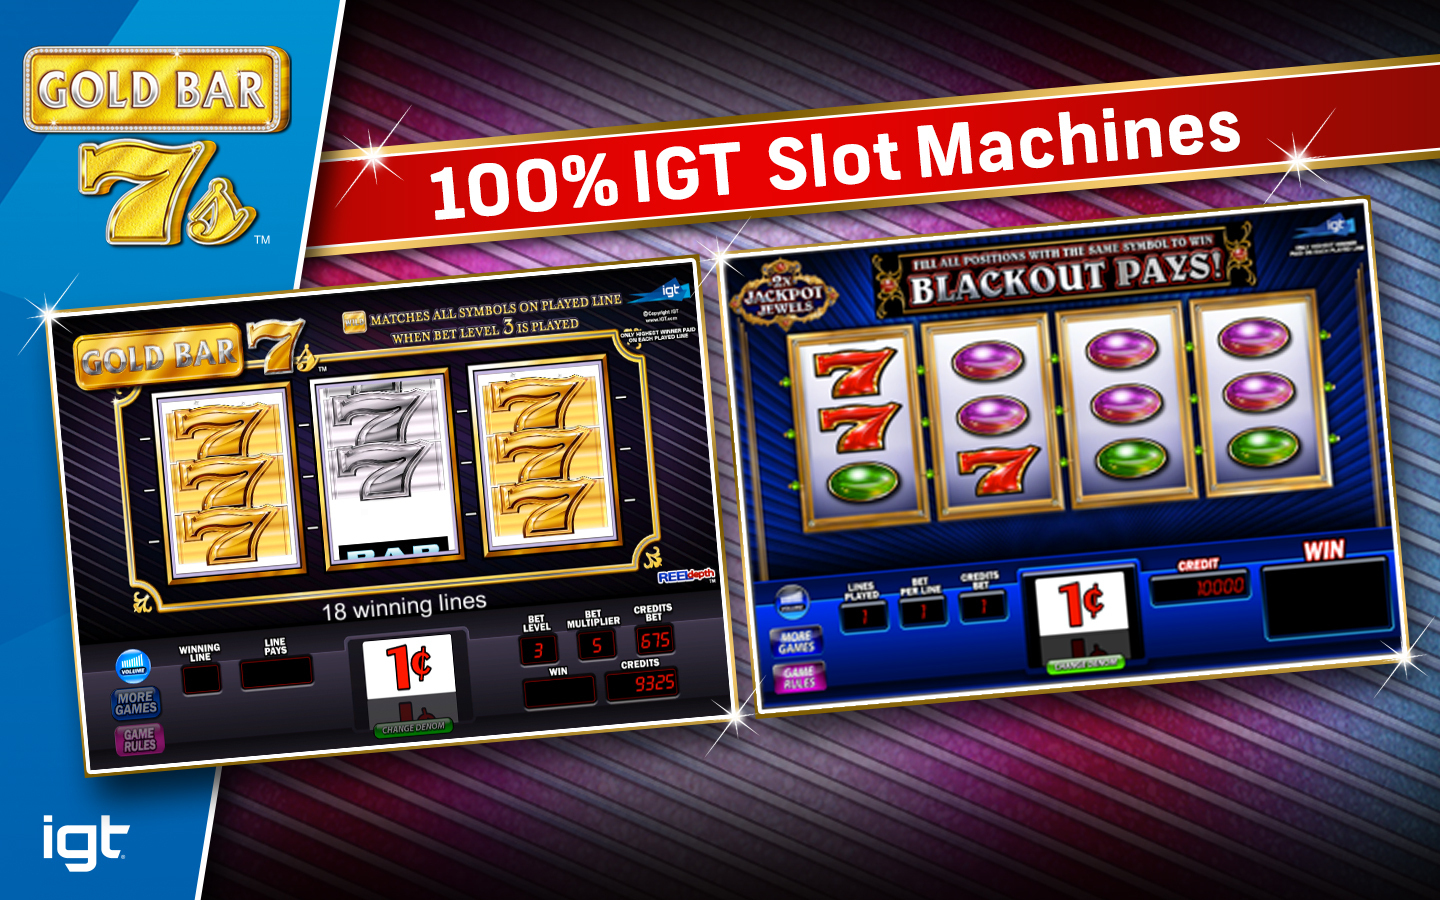 Slot Machines Description